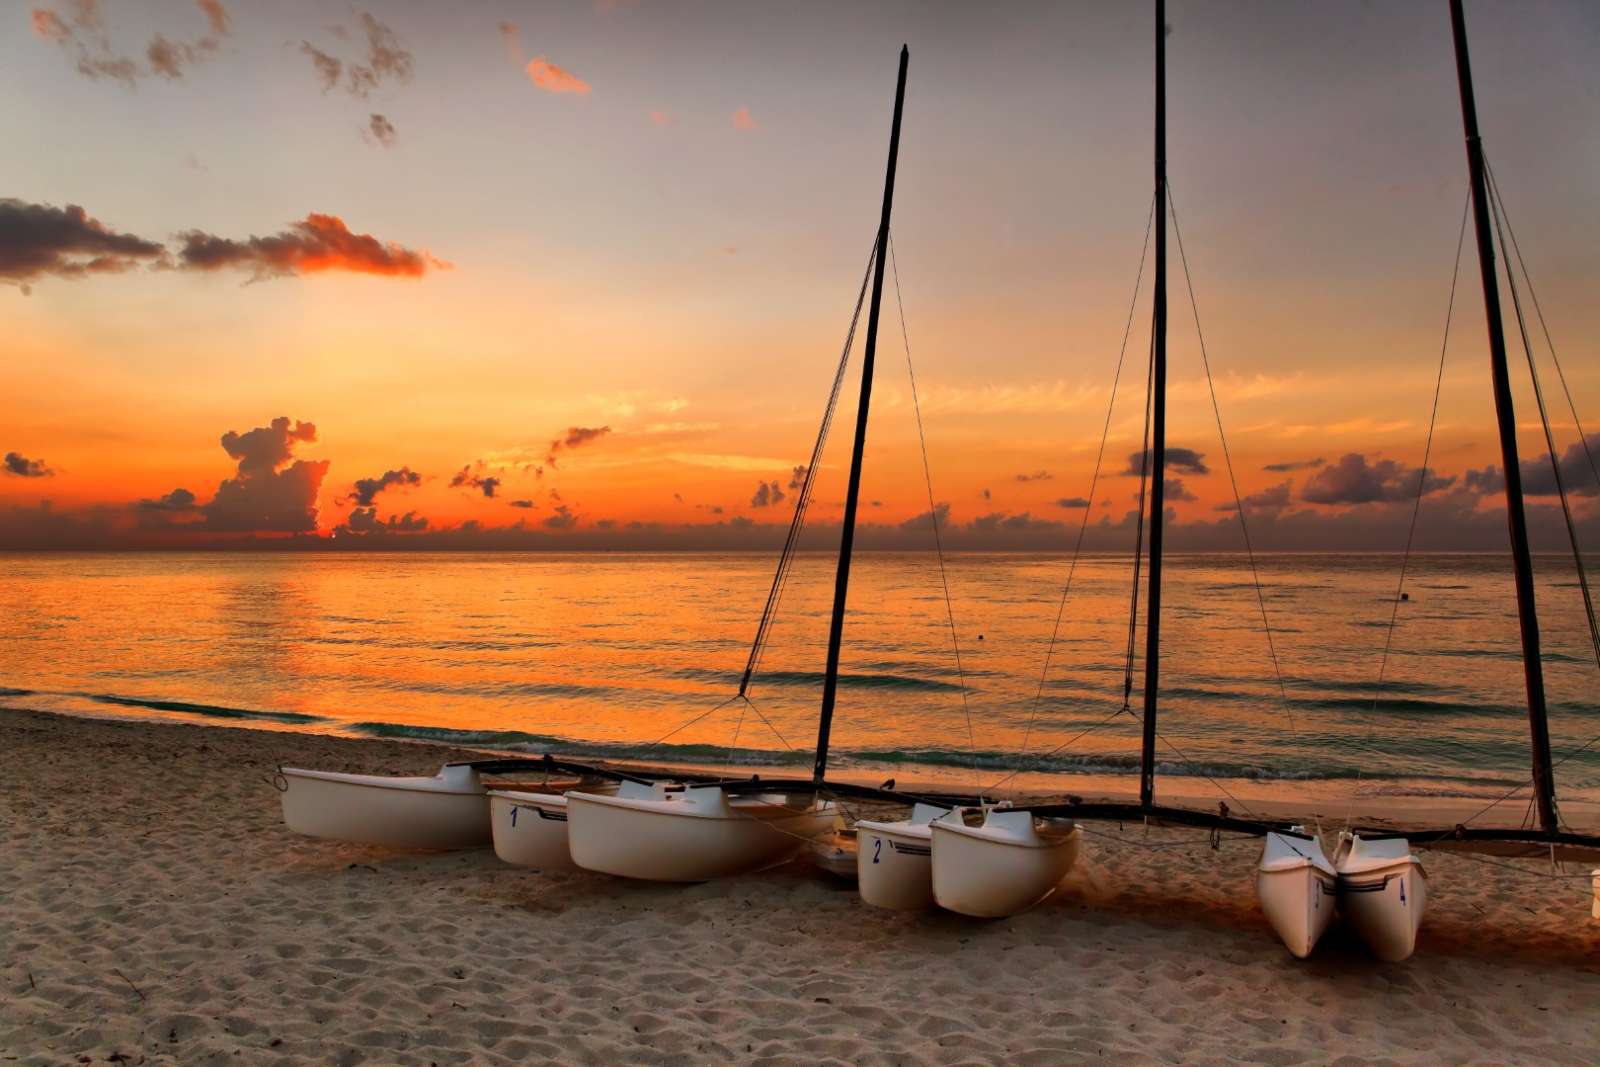 Sunset on Varadero beach